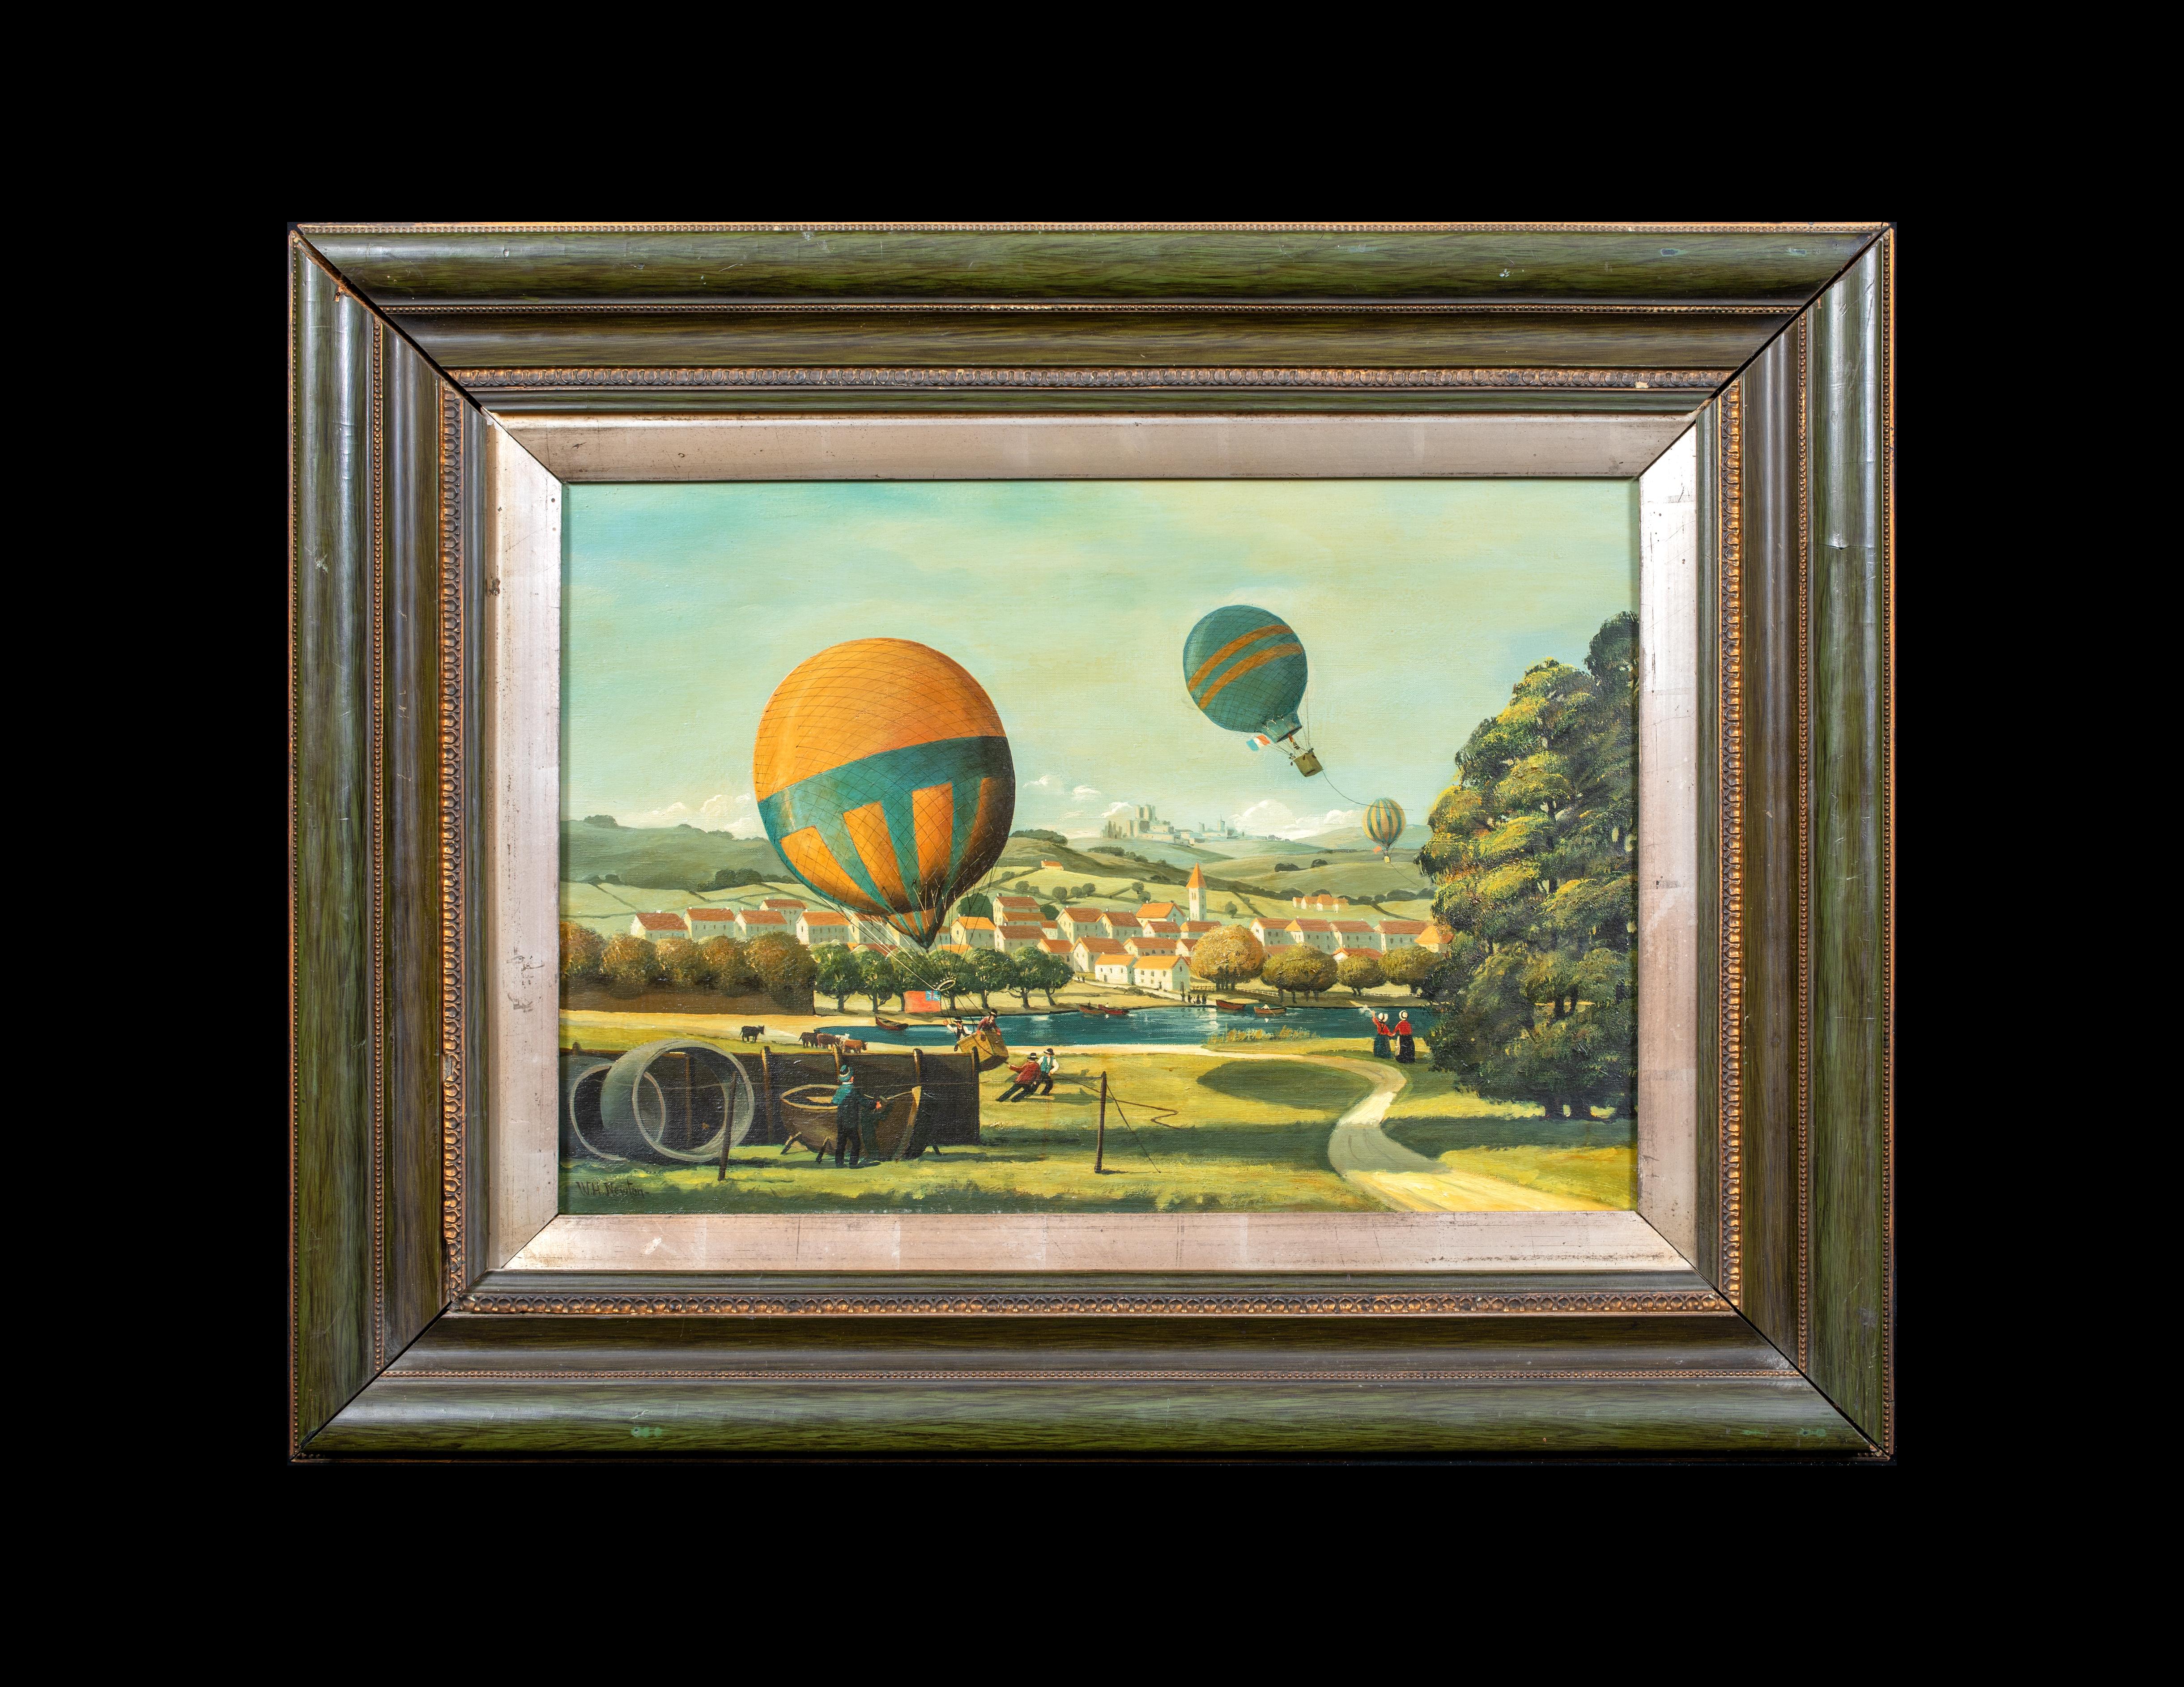 Paysage de course de ballons d'aviation aérienne, vers 1900  École d'Angleterre - signée W H NEWTON - Marron Landscape Painting par Unknown